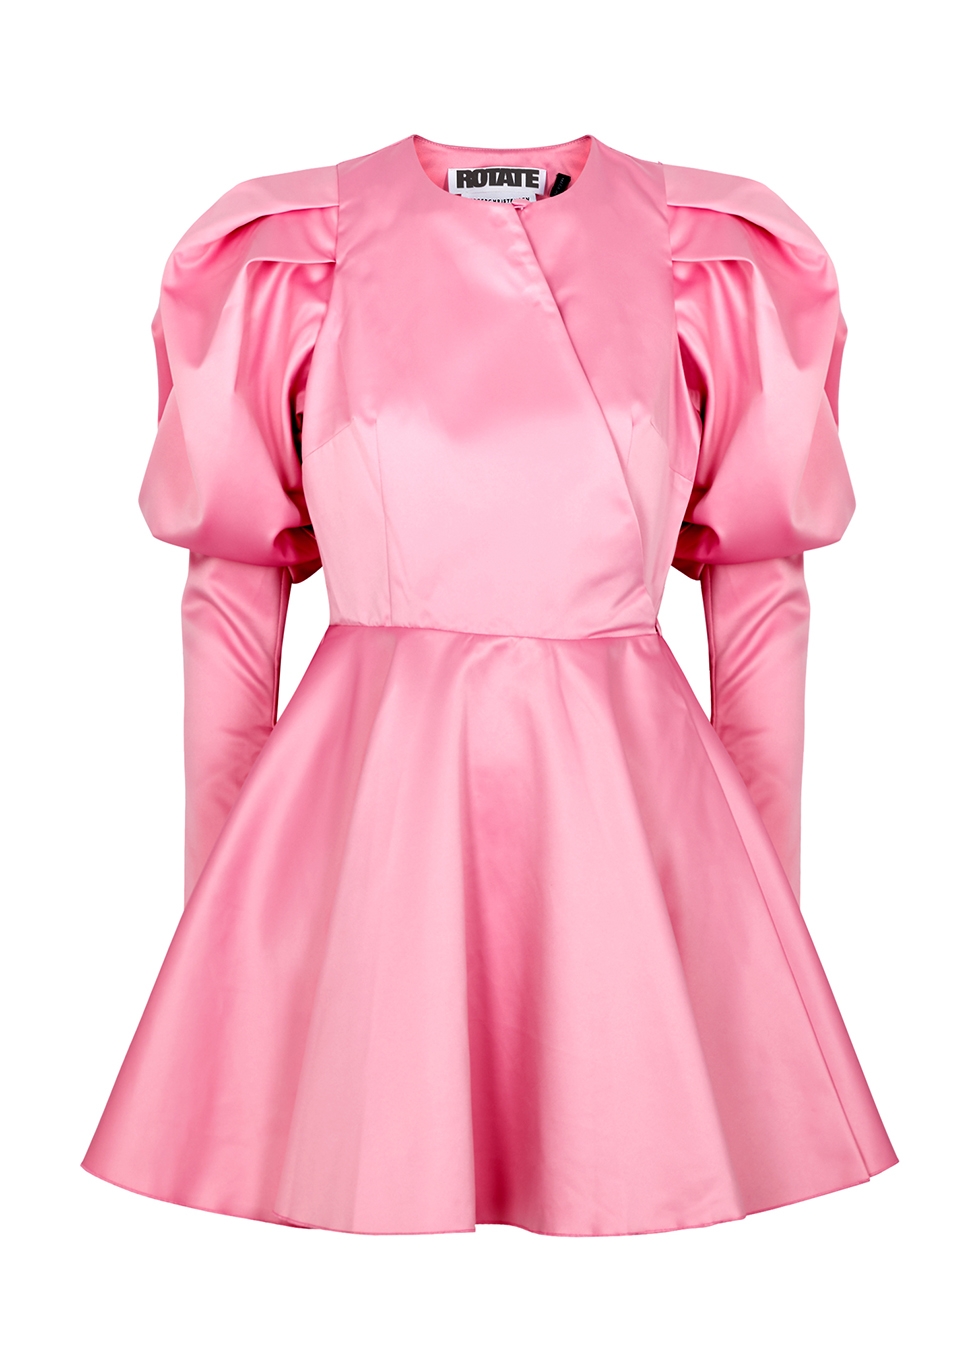 rotate birger christensen pink dress